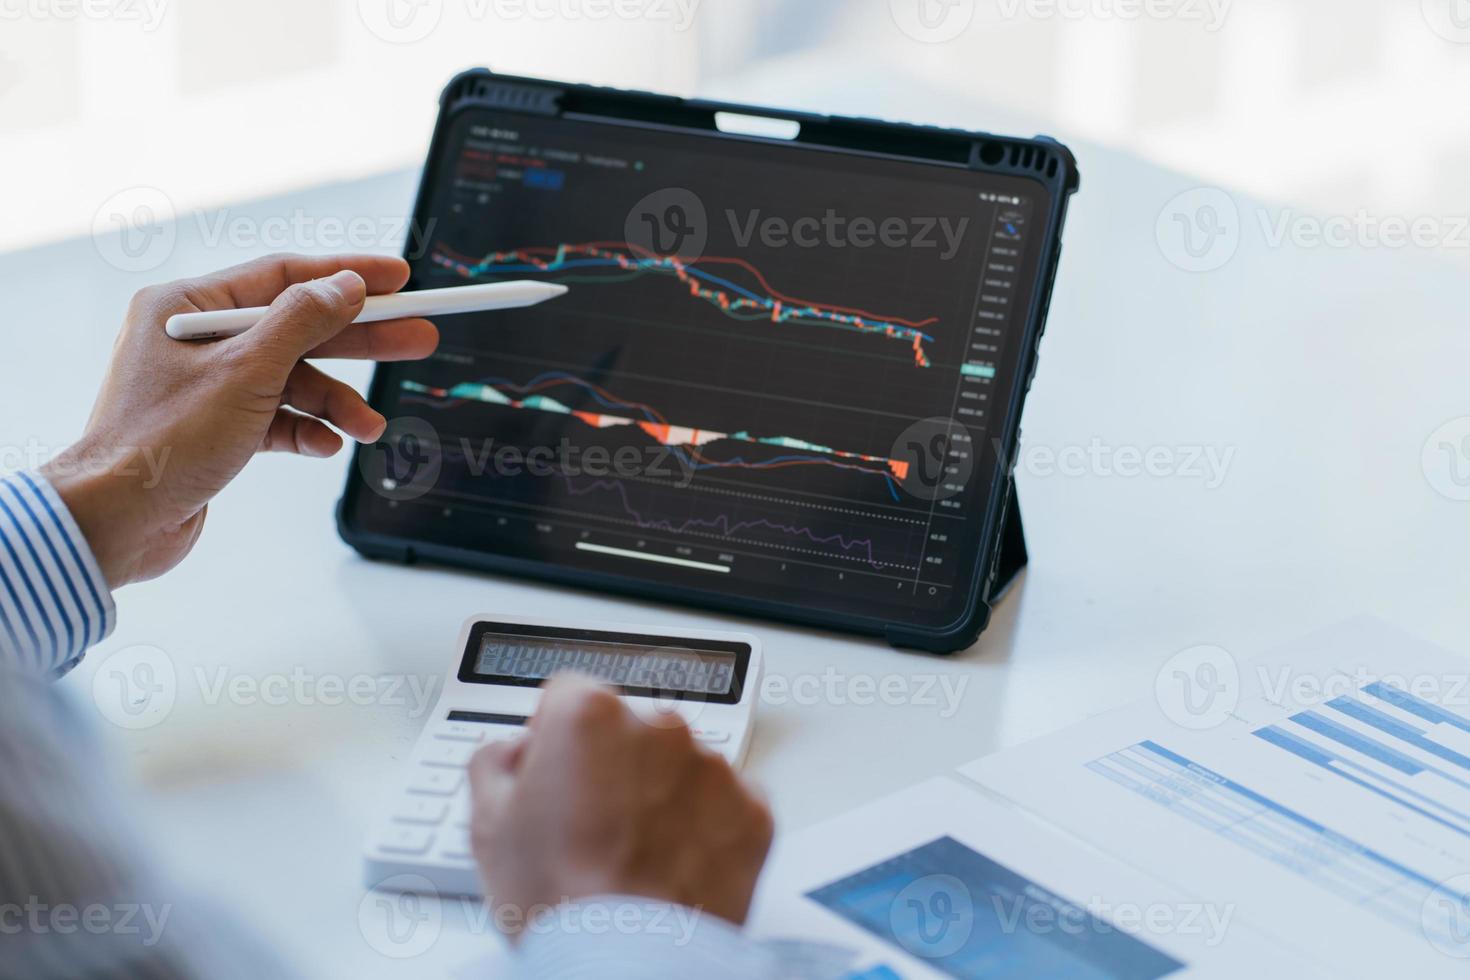 börsmarknadskoncept, affärsinvesterarhandel eller aktiemäklare som planerar och analyserar med bildskärm och pekar på data som presenteras och handlar på en börs. foto